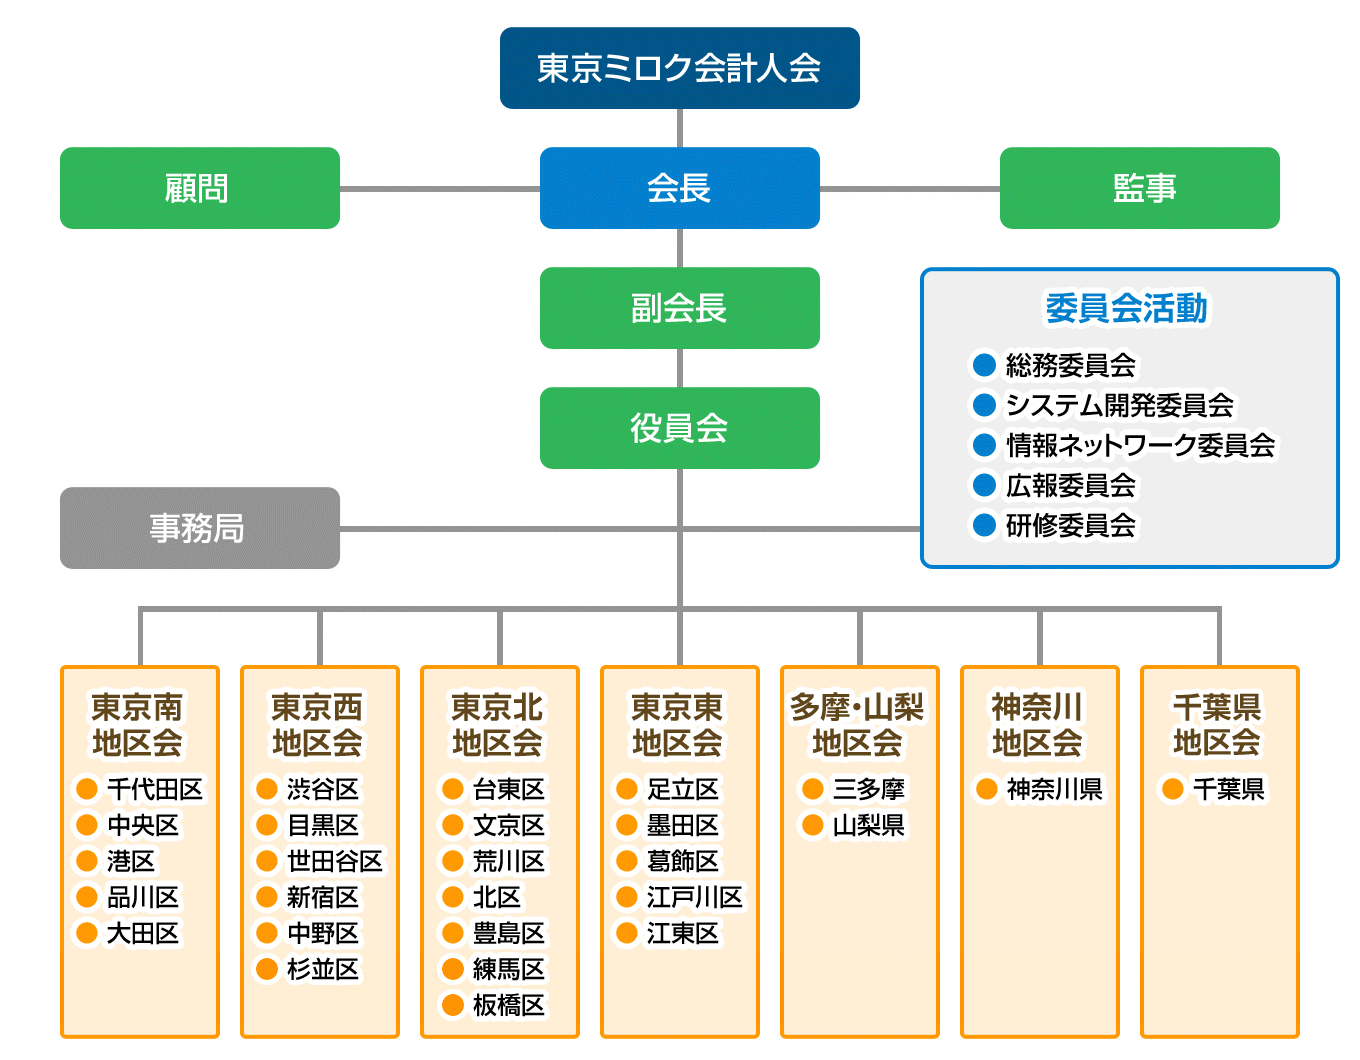 ミロク会計人会連合会　東京会の組織図